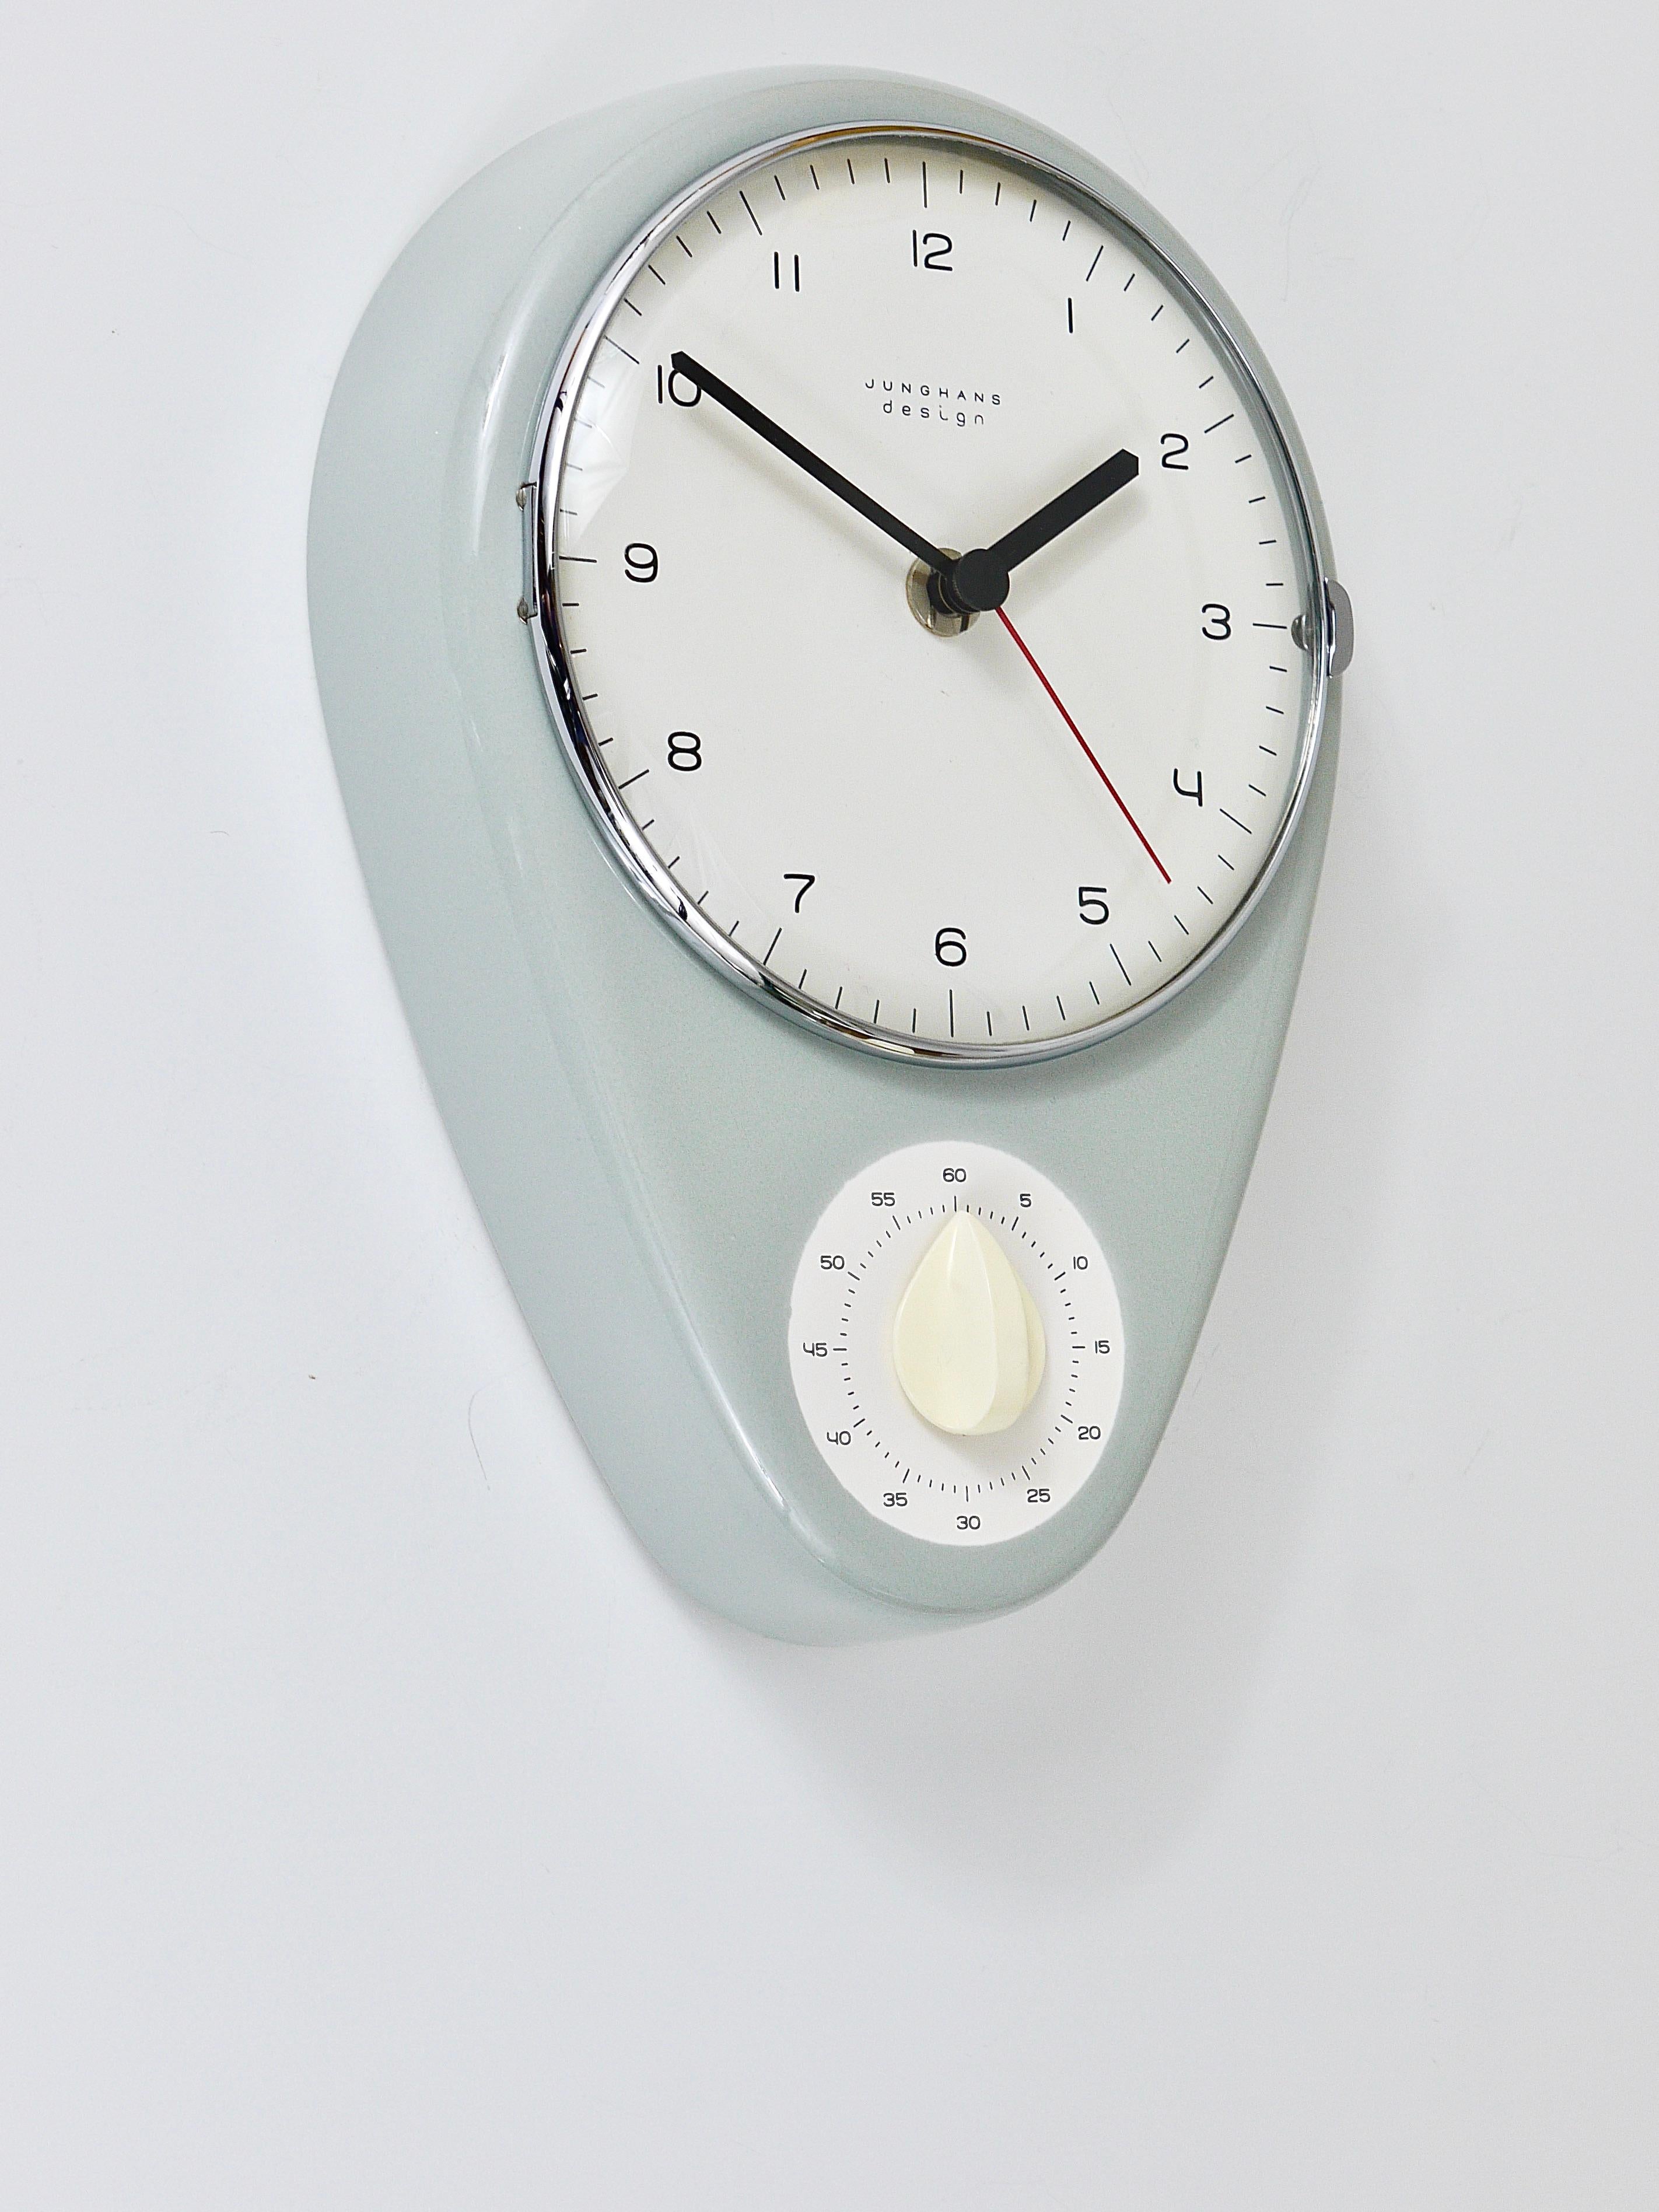 Une horloge murale et une minuterie au design moderniste iconique, originale et ancienne des années 1950, conçue par Max Billing, exécutée par Junghans Allemagne. Une belle et adorable horloge murale avec un boîtier en céramique émaillée gris clair,